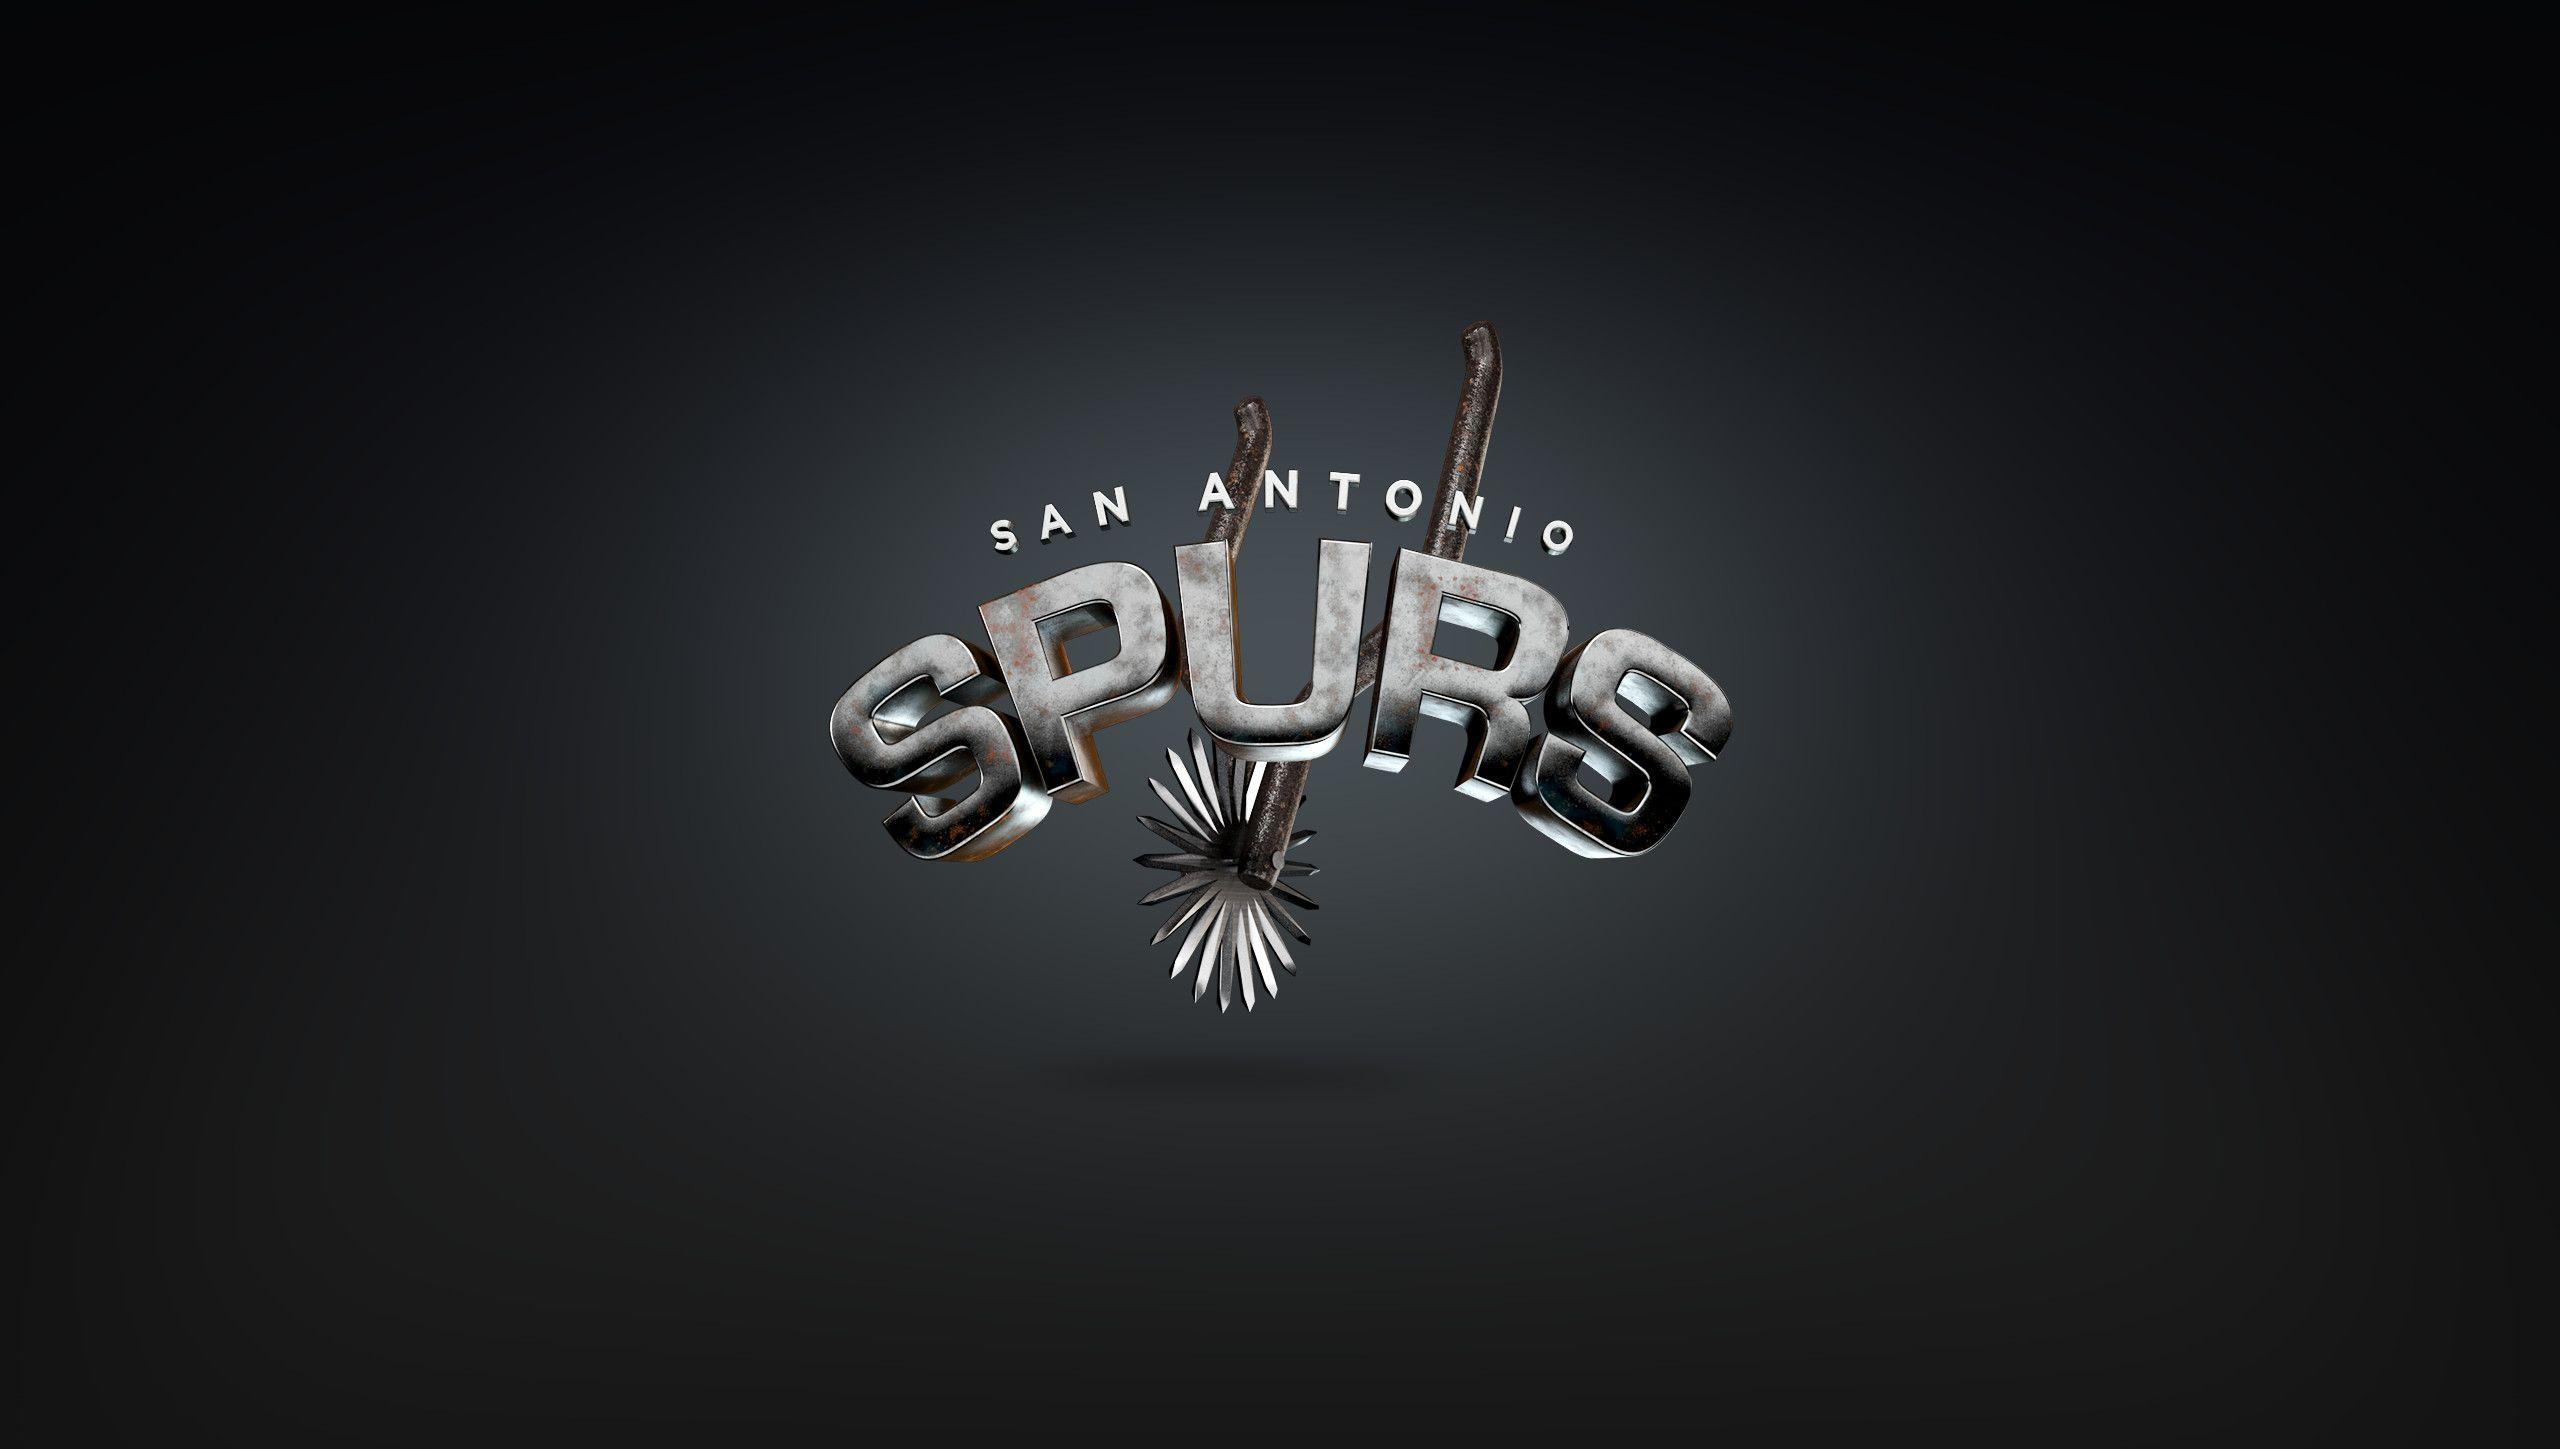 San Antonio Spurs Wallpaper 2018